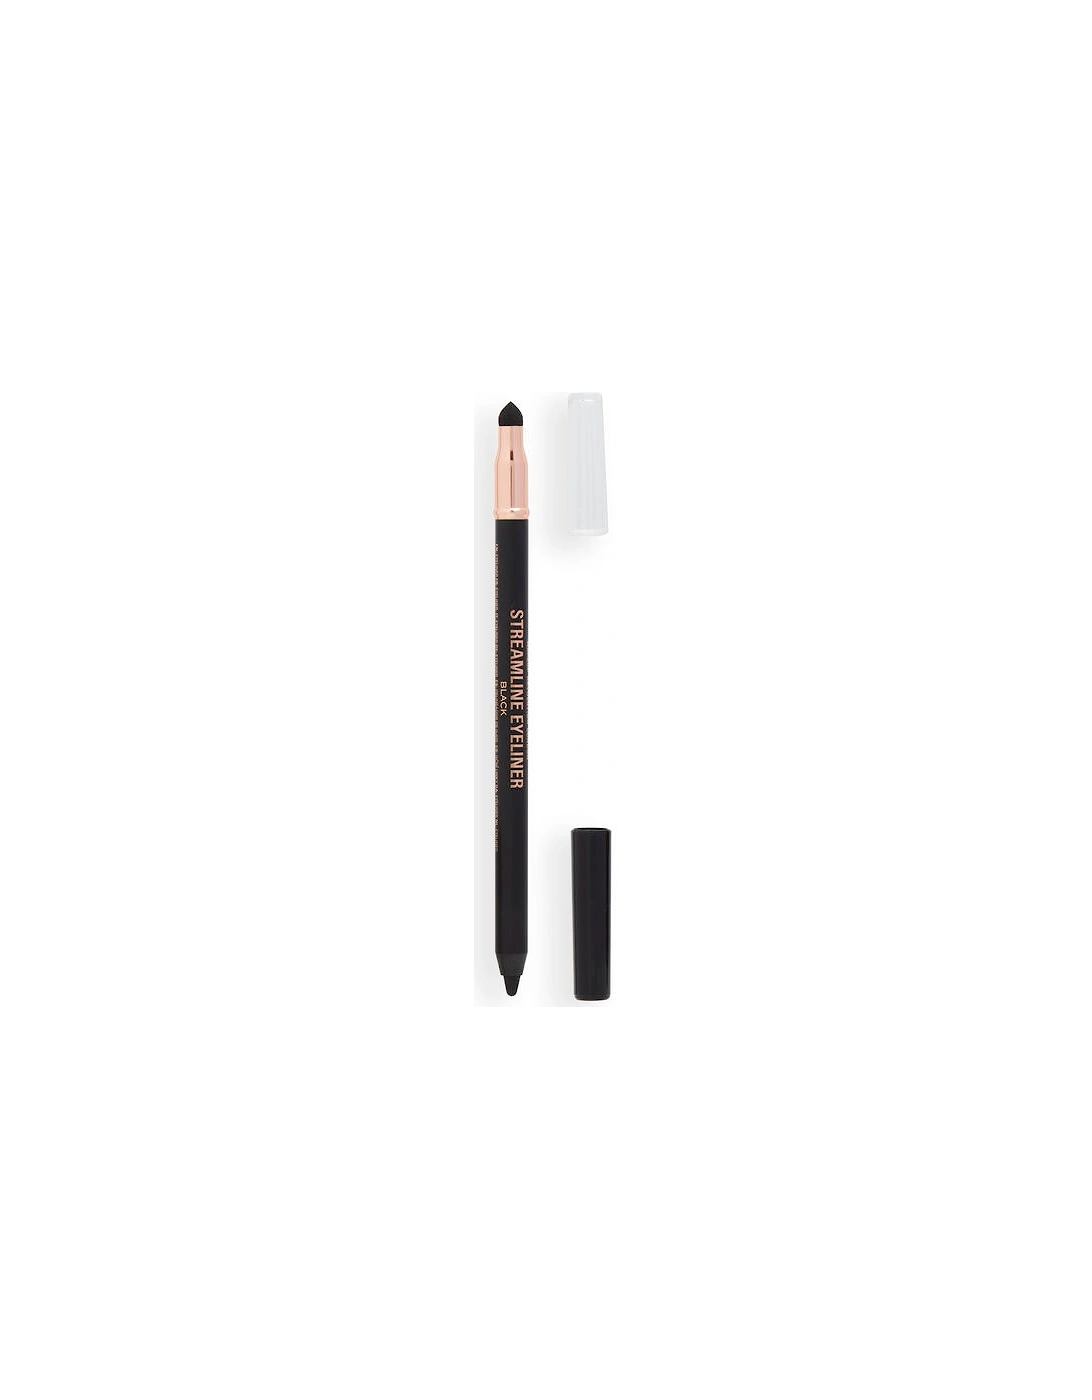 Makeup Streamline Waterline Eyeliner Pencil Black, 2 of 1